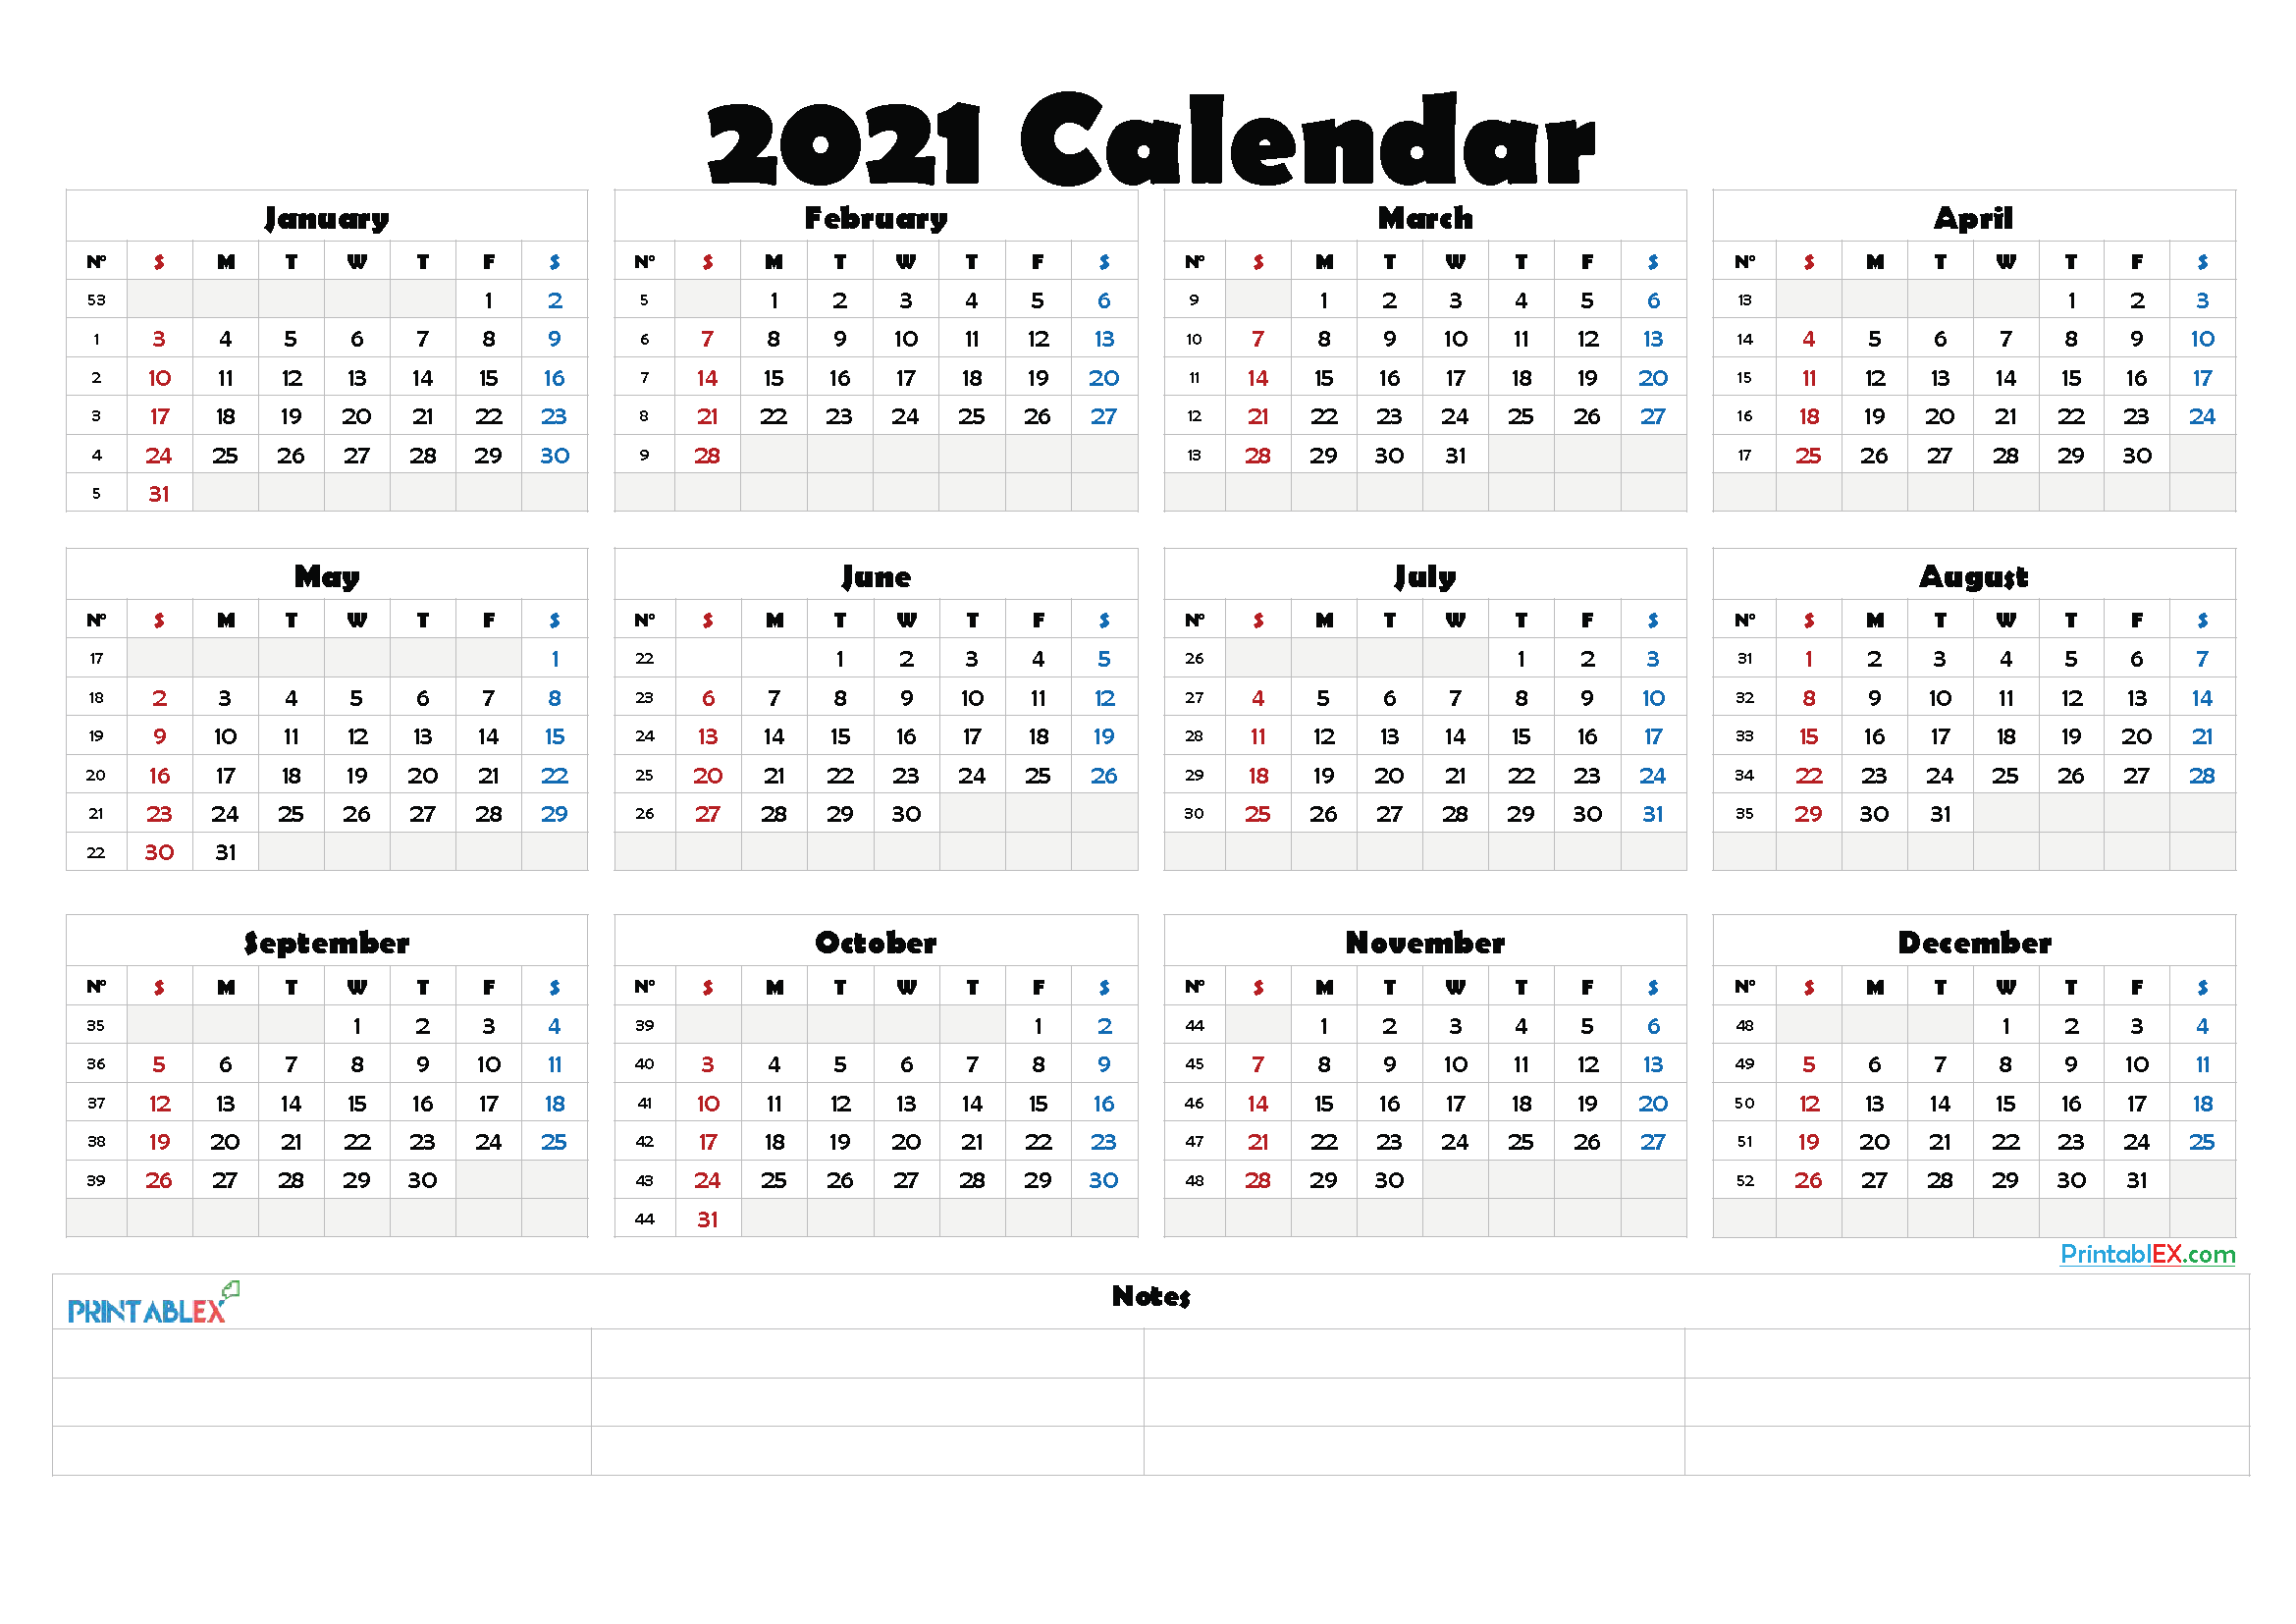 2021 Calendar With Week Number Printable Free - 2021 Free ...